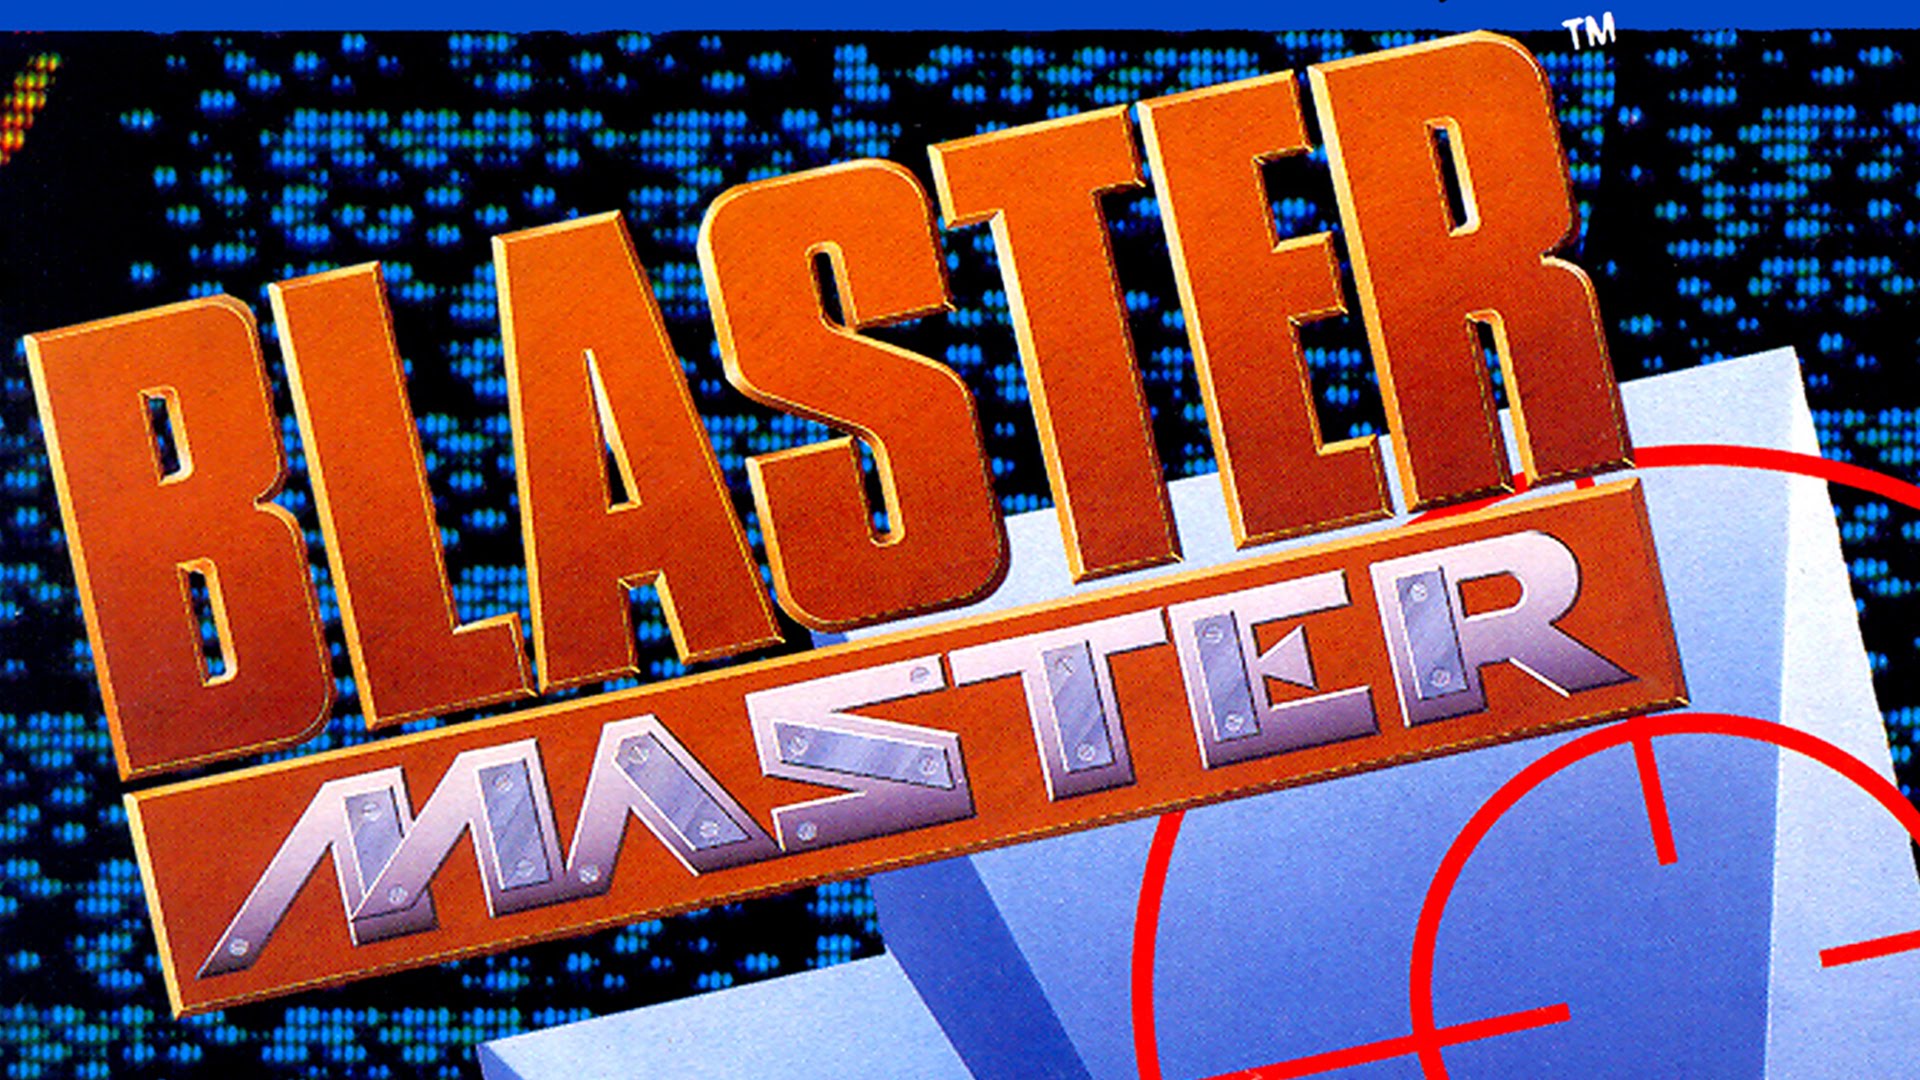 Blaster Master #28